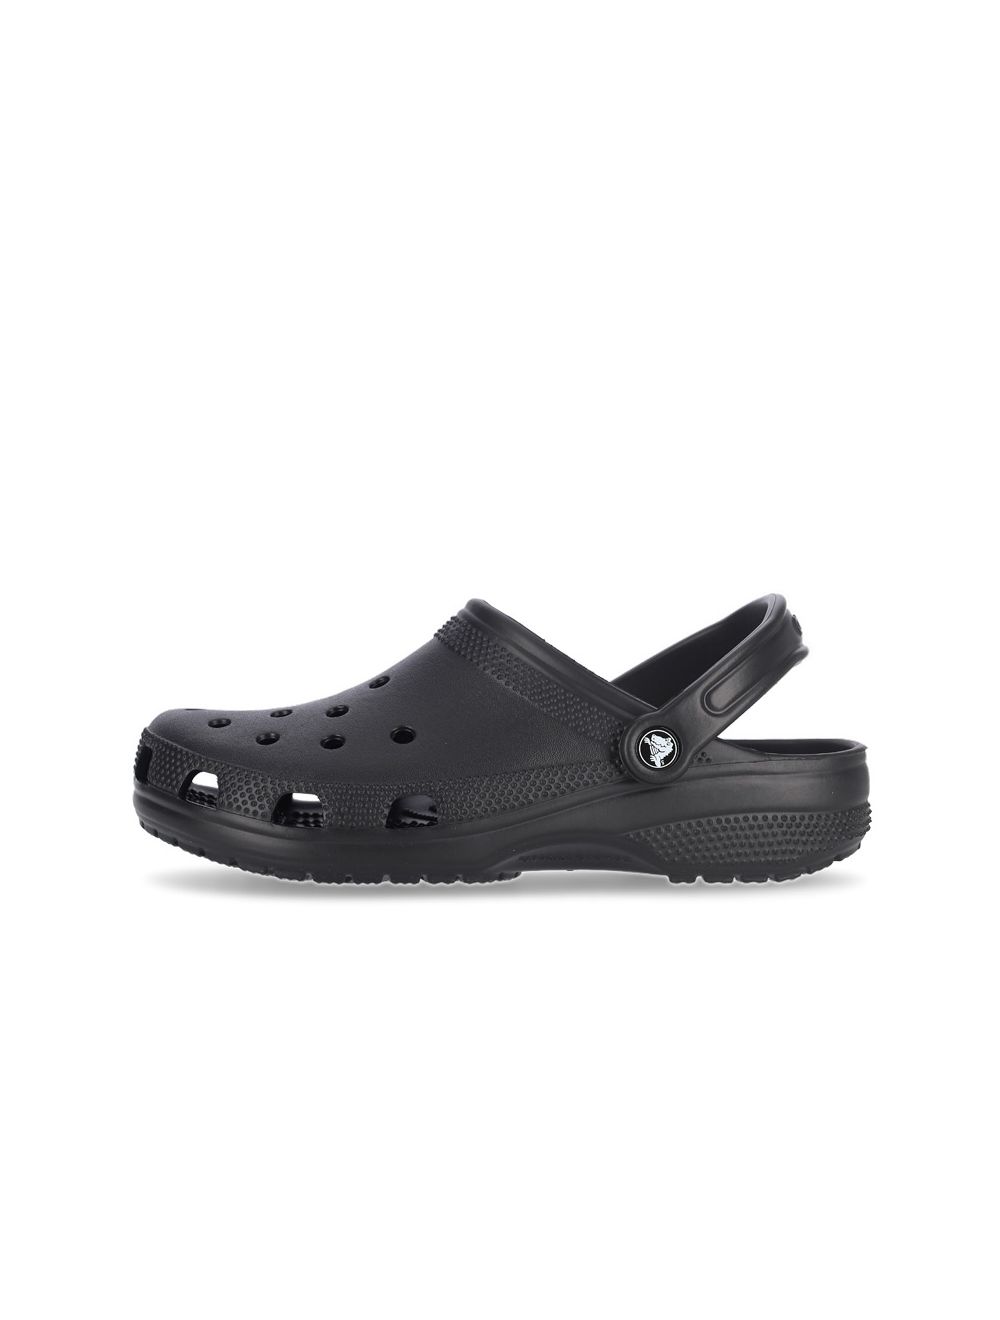 Crocs Classic Hiker Clog Black Mens Sandals Slides Crocs, 48% OFF